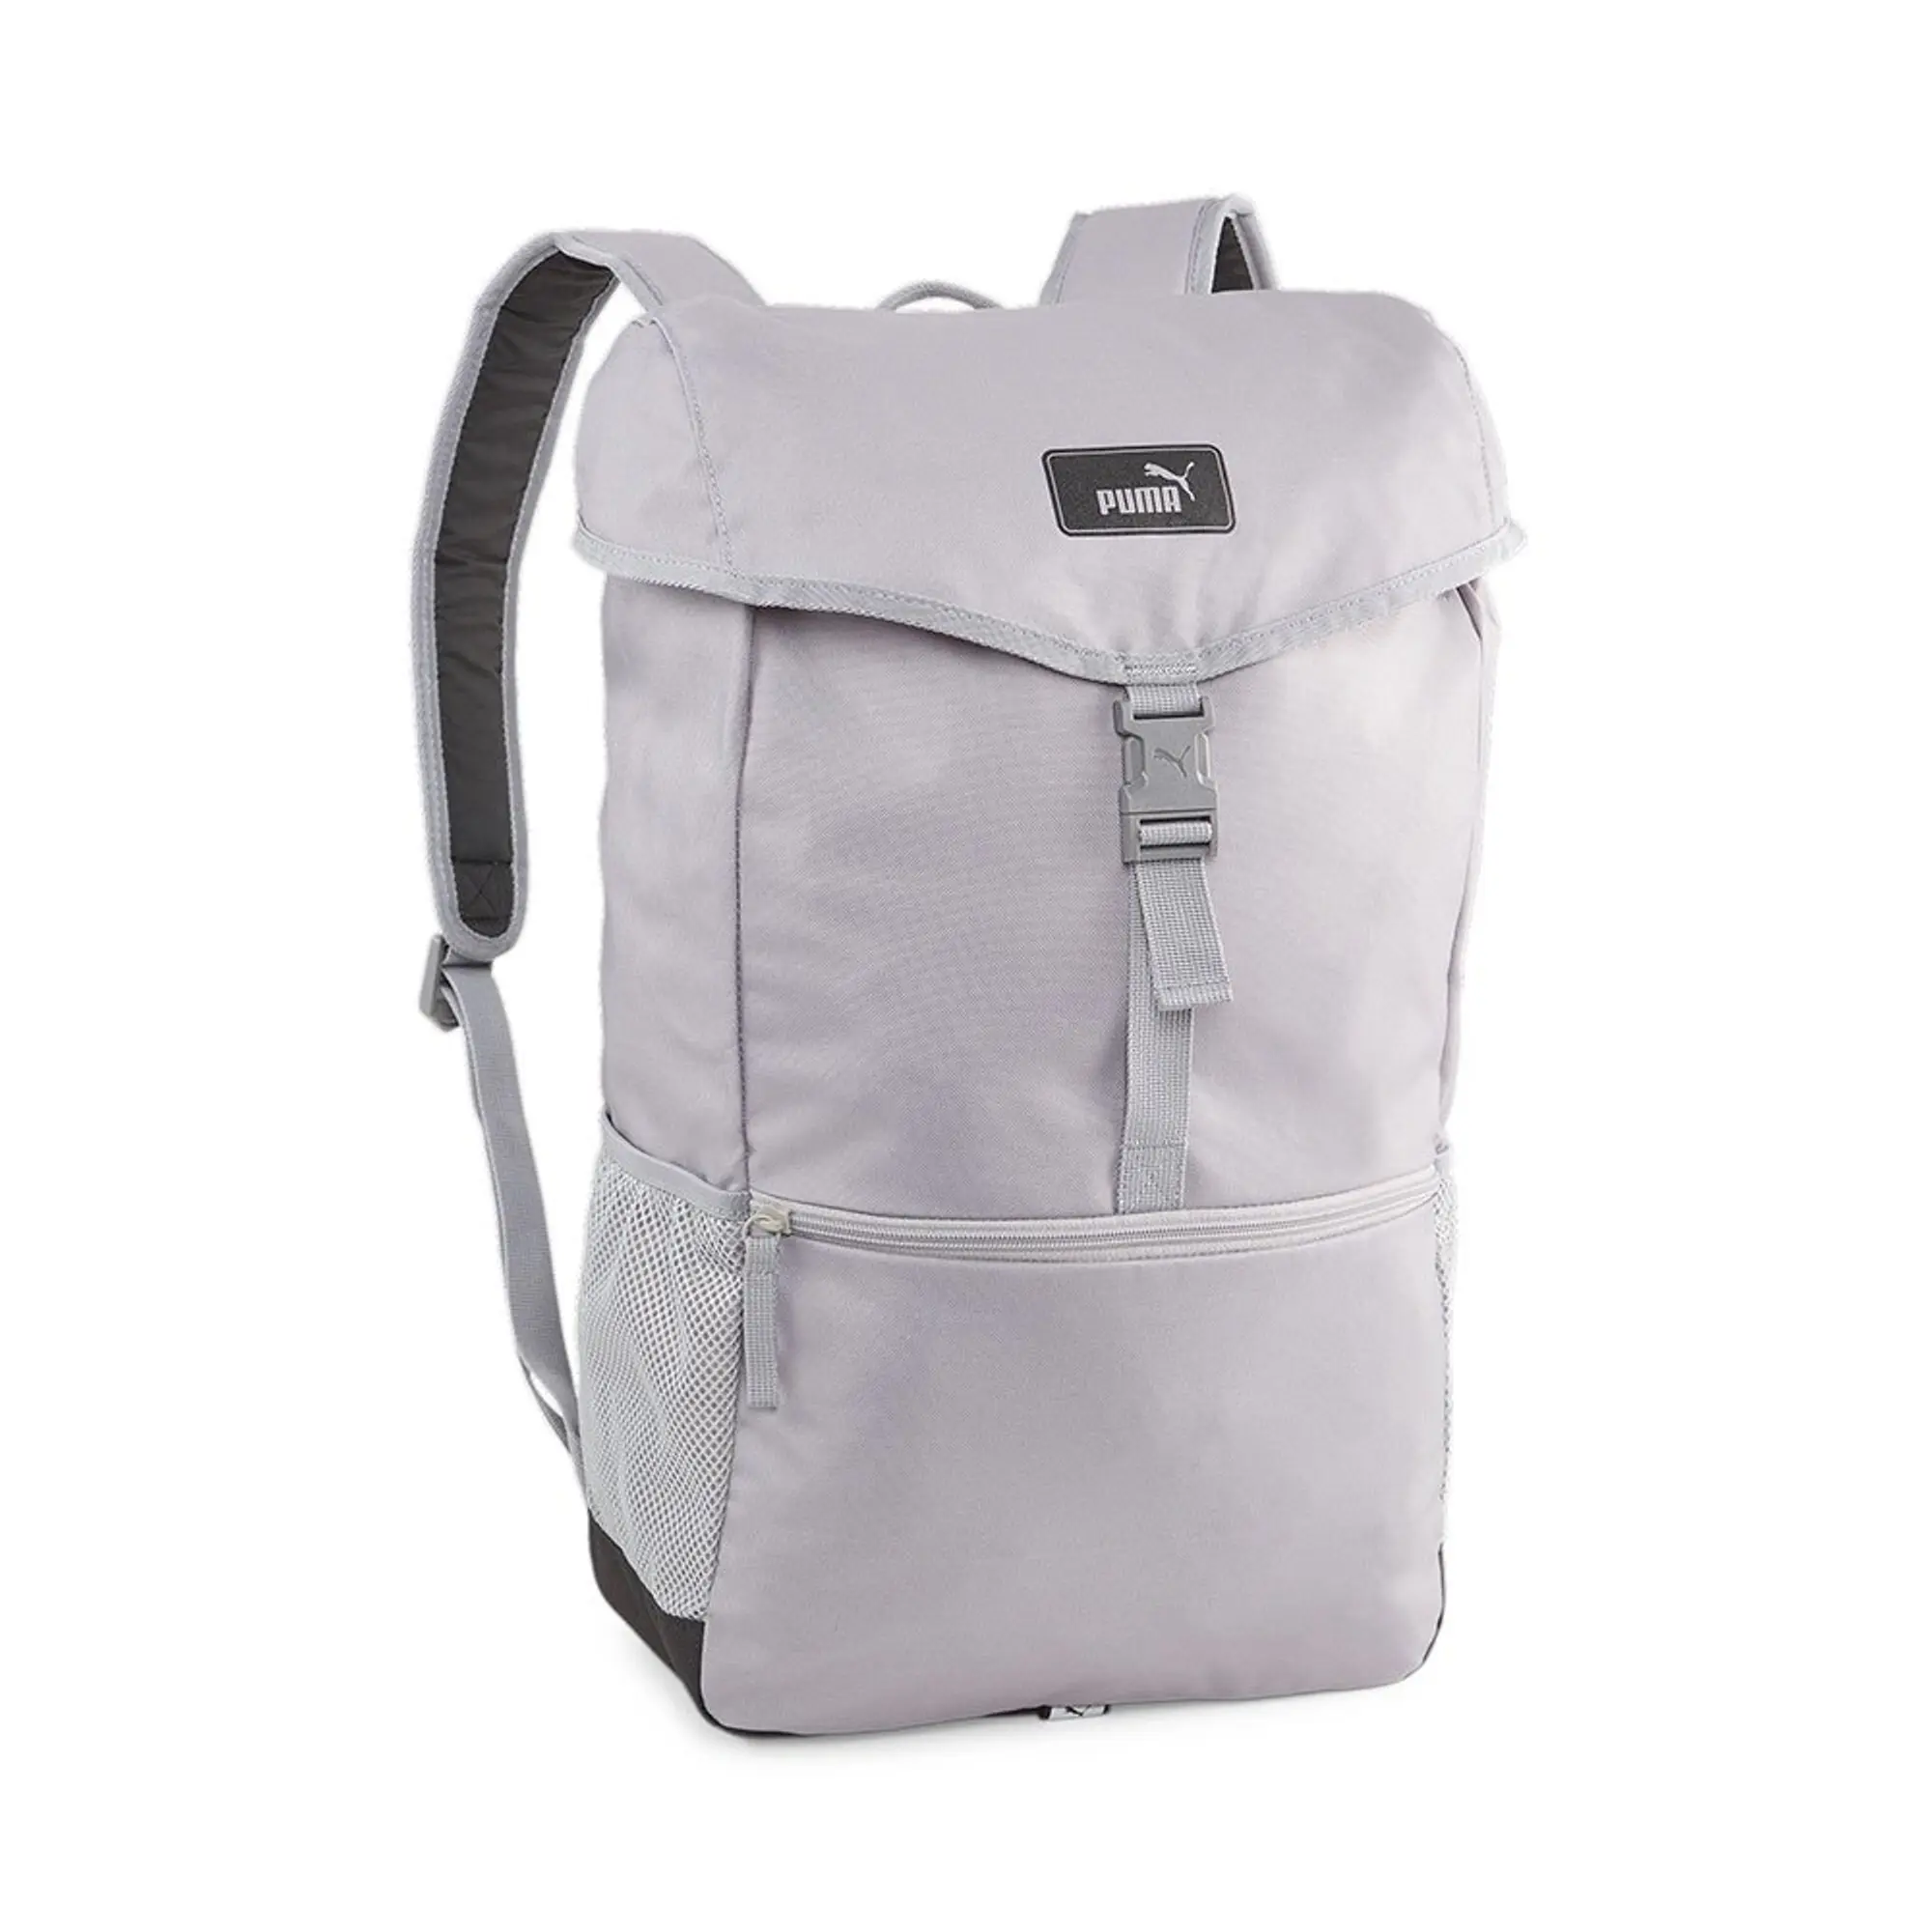 Puma Unisex Style Backpack - Grey - One Size